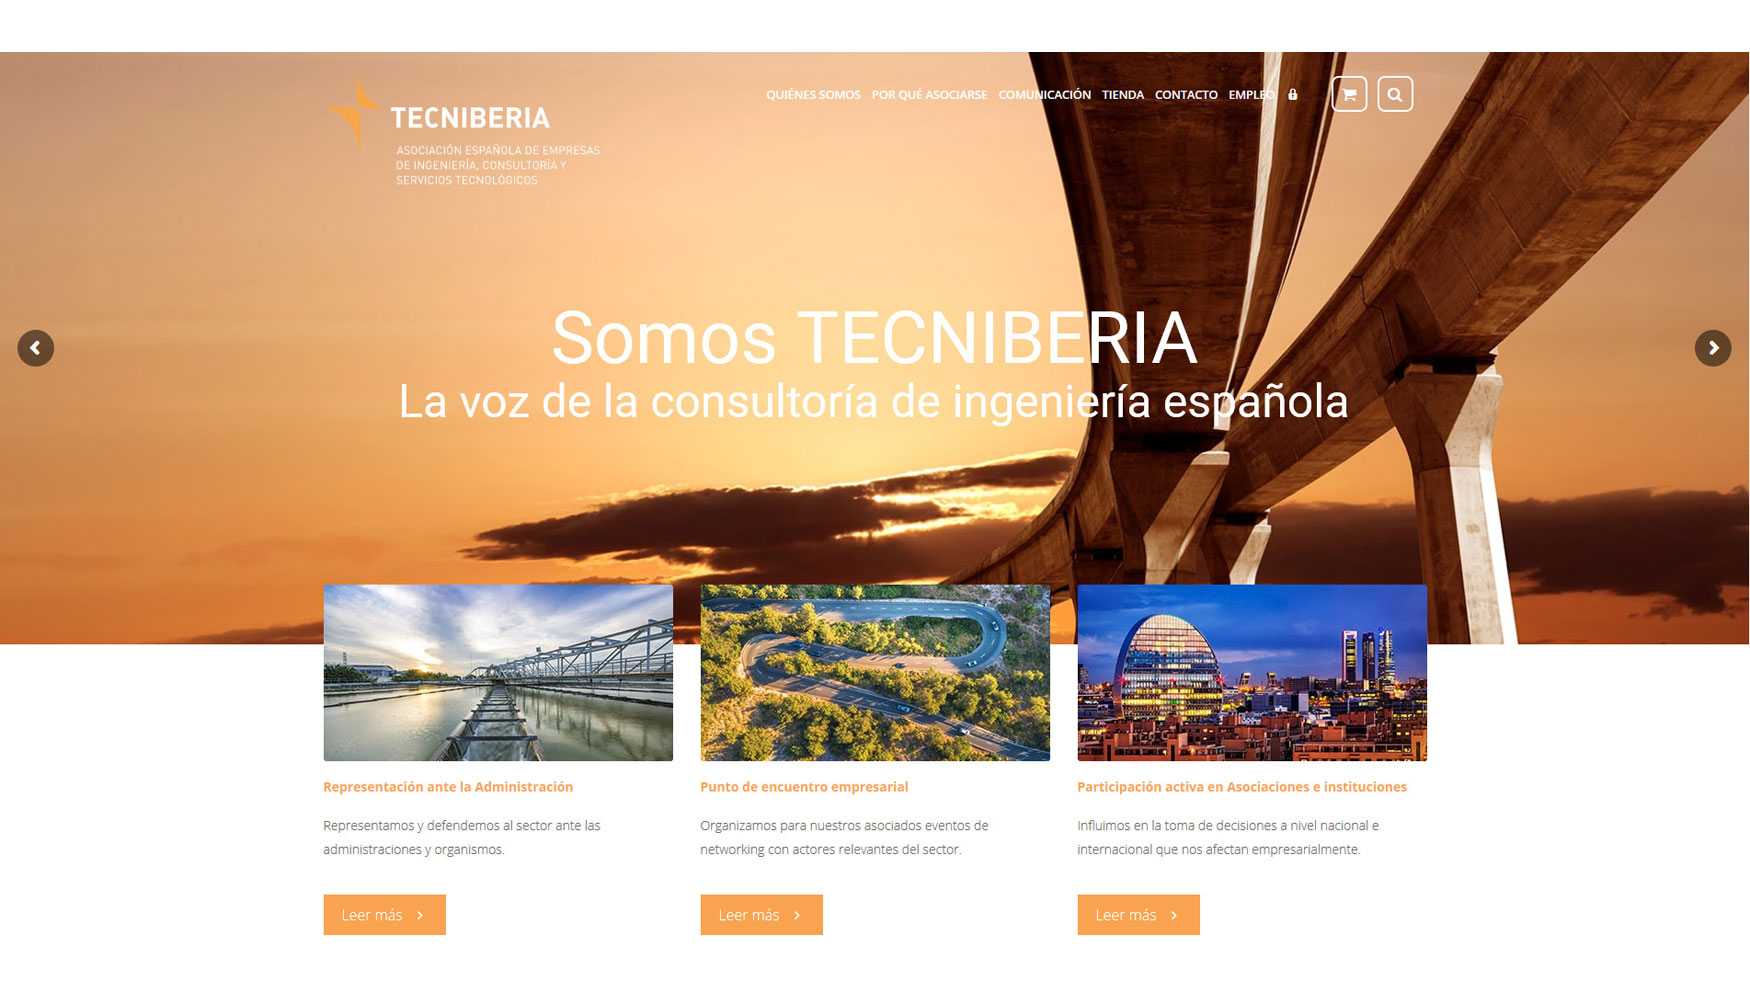 Tecniberia ofrece una completa informacin de sus servicios en su pgina web